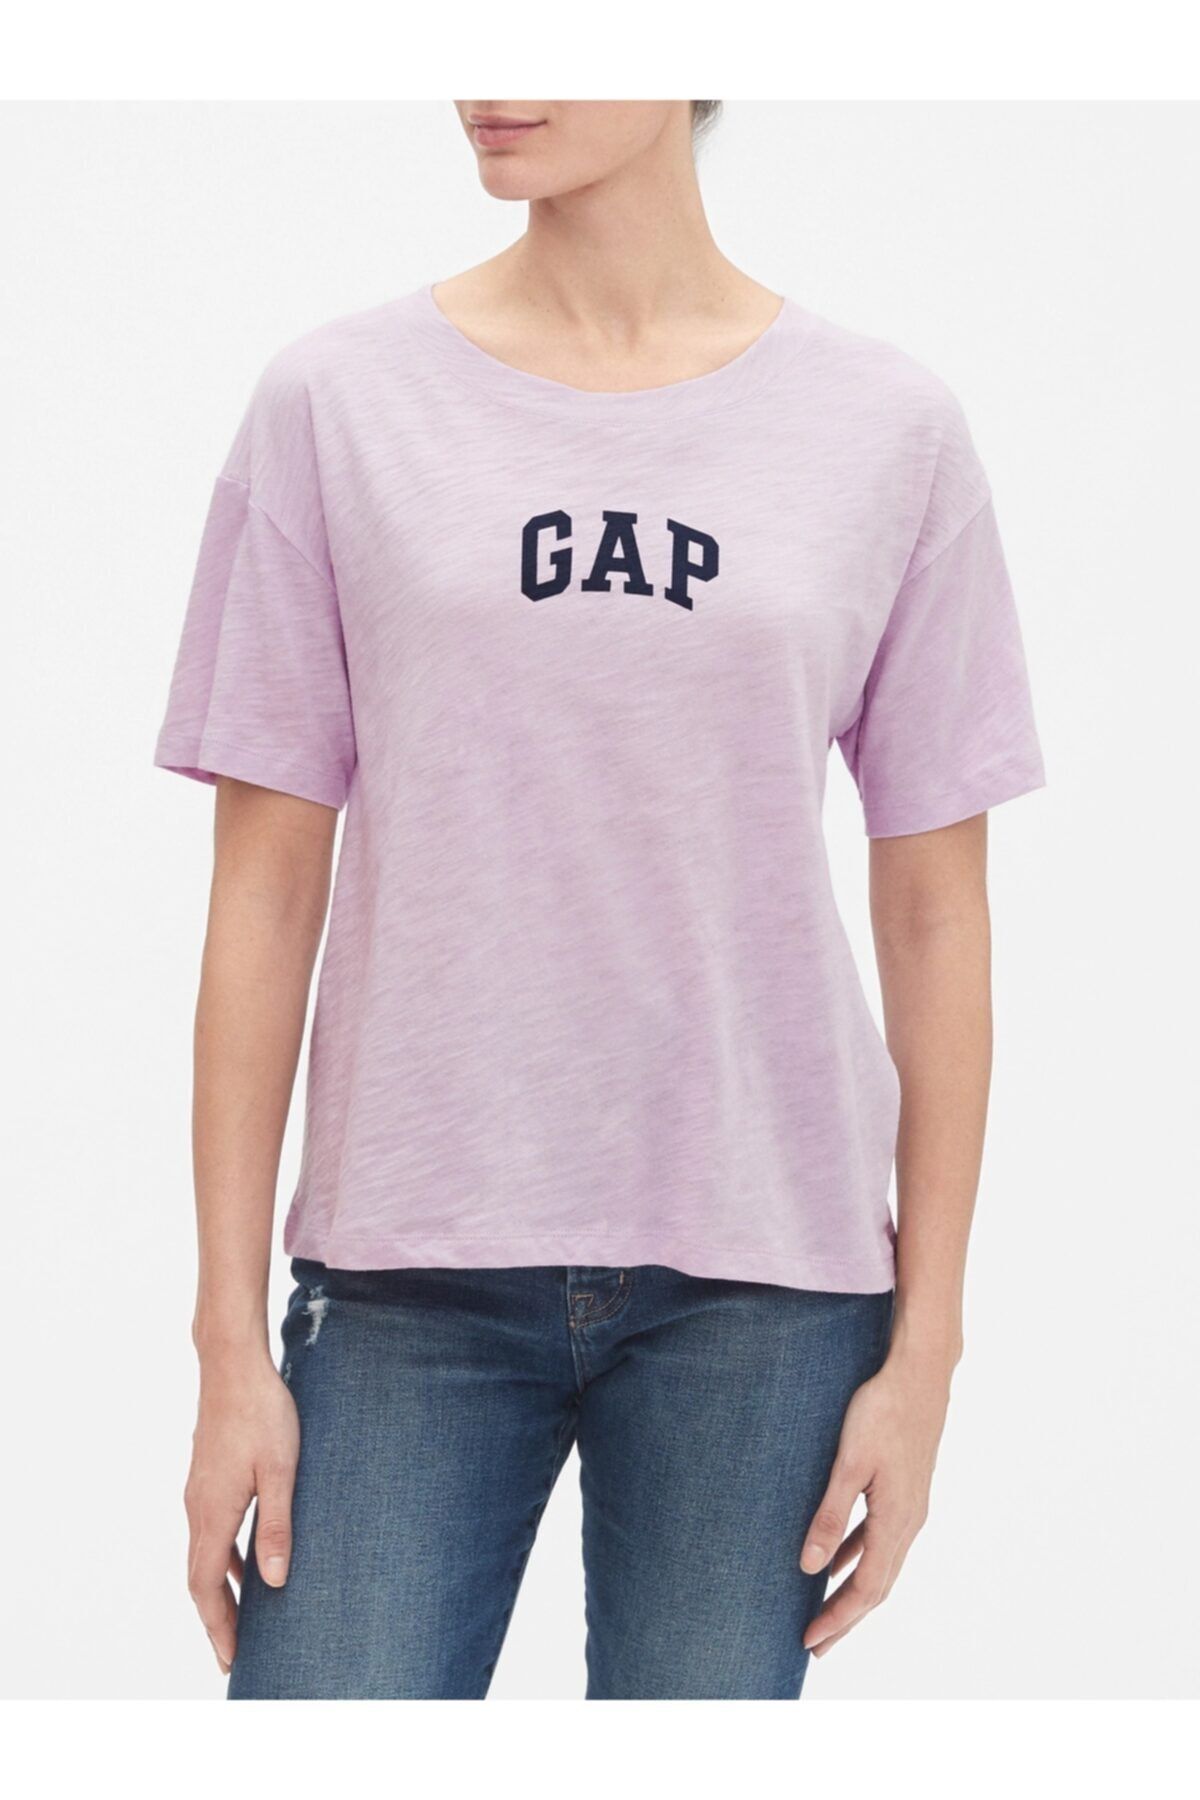 GAP Kadın Mor Logo Kısa Kollu T-shirt